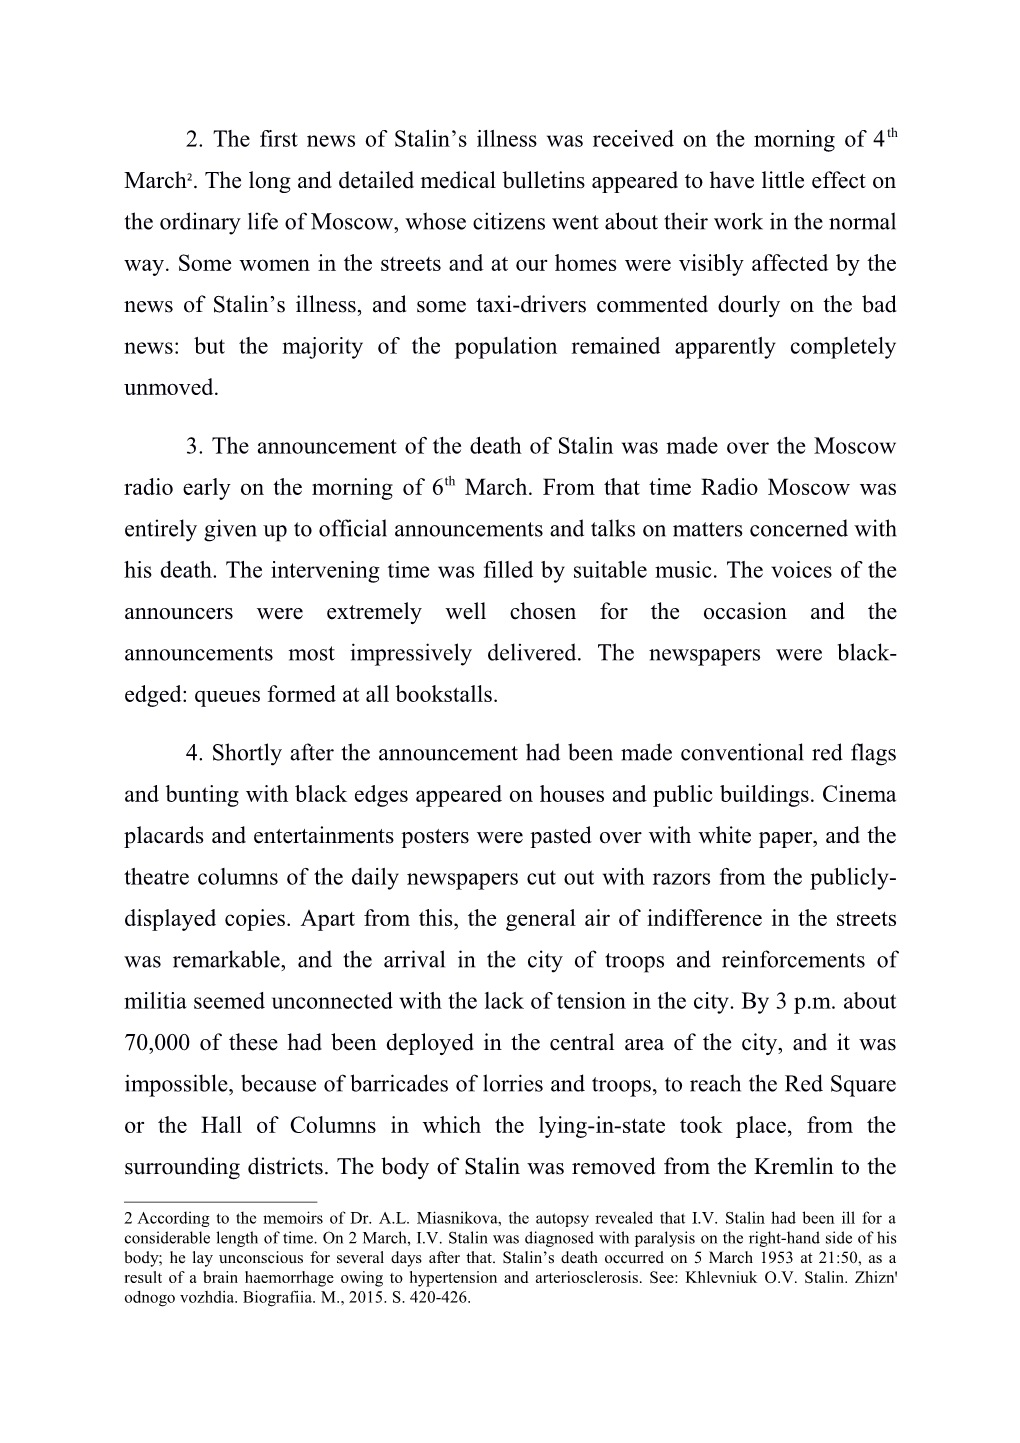 1953-03-16 Gascoigne Report Stalin's Death